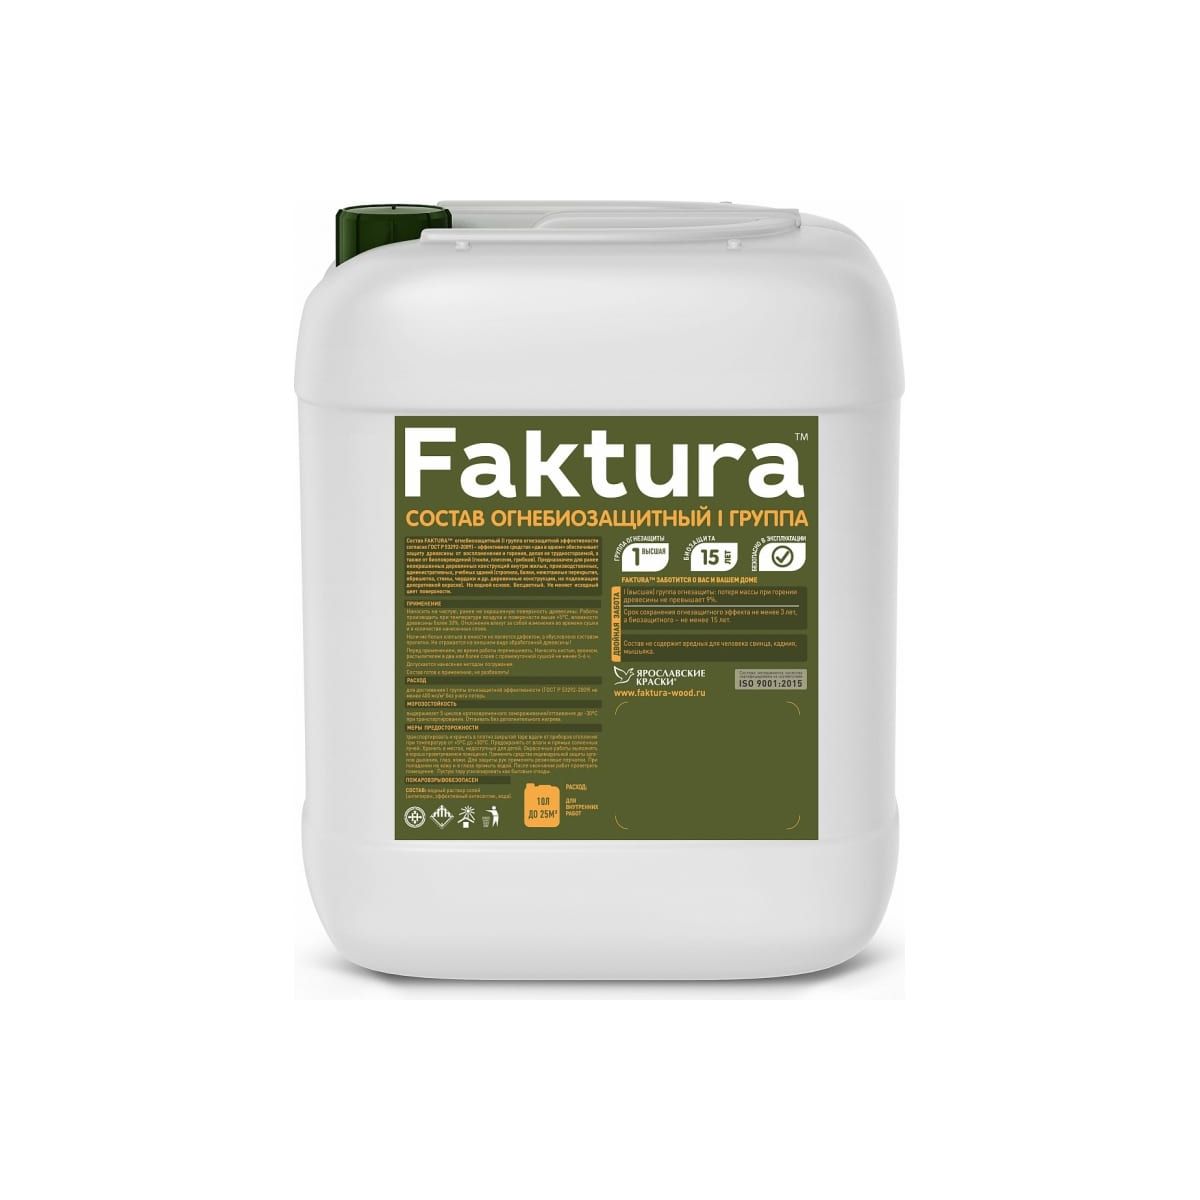 Состав огнебиозащитный Faktura I группа, бесцветный, 10 л биозащитный состав для древесины faktura